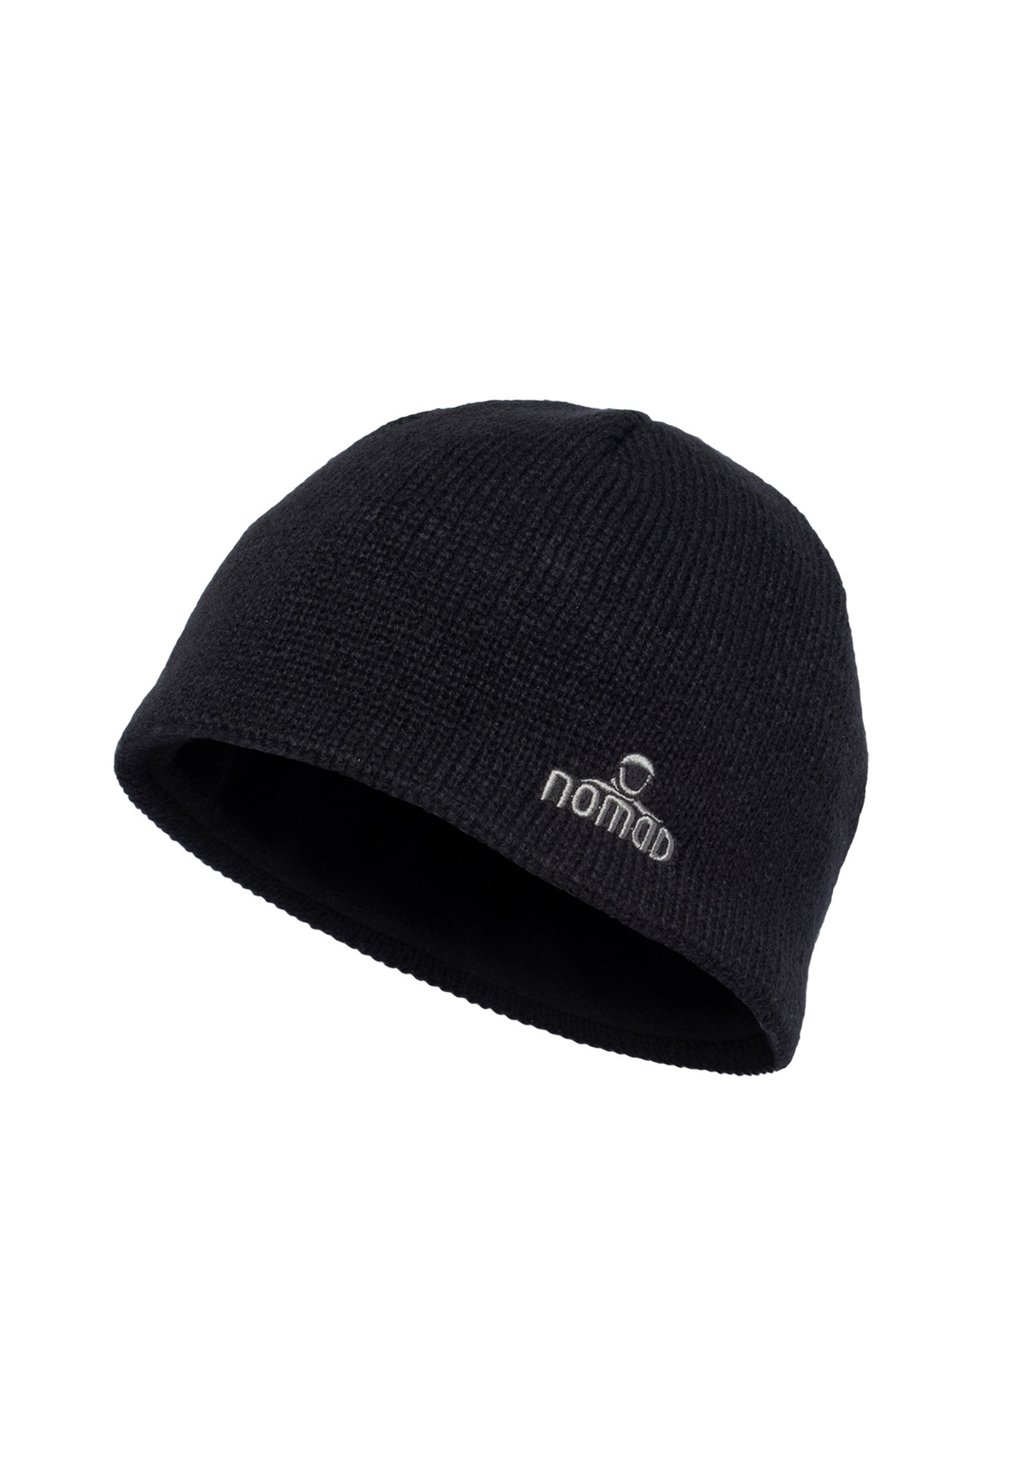 Шапка ONE SIZE Nomad, цвет black шапка niki дизайнерская перчик размер one size черный